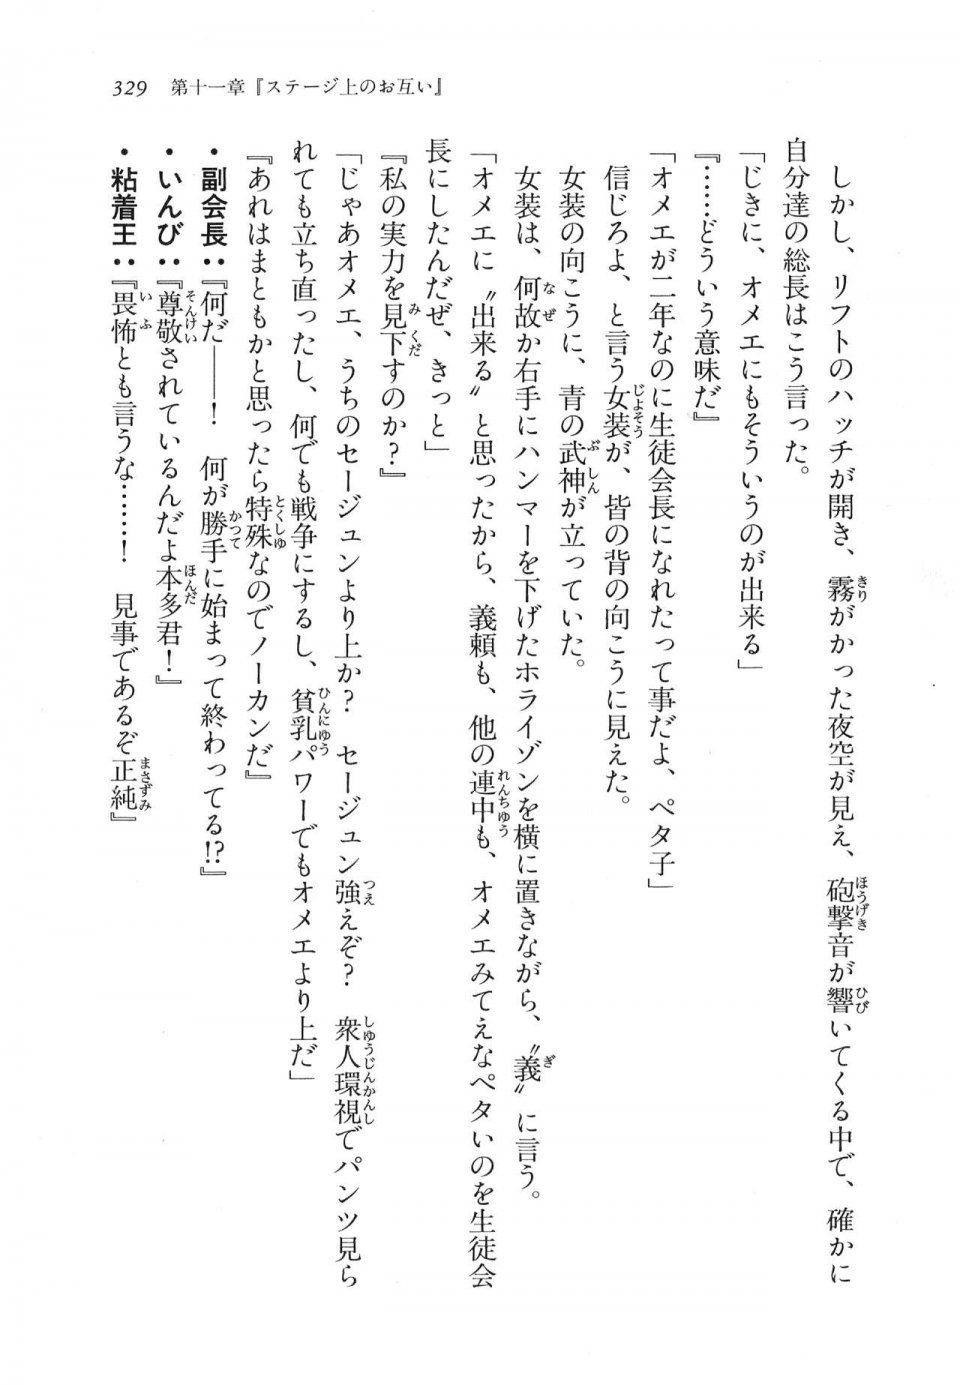 Kyoukai Senjou no Horizon LN Vol 11(5A) - Photo #329